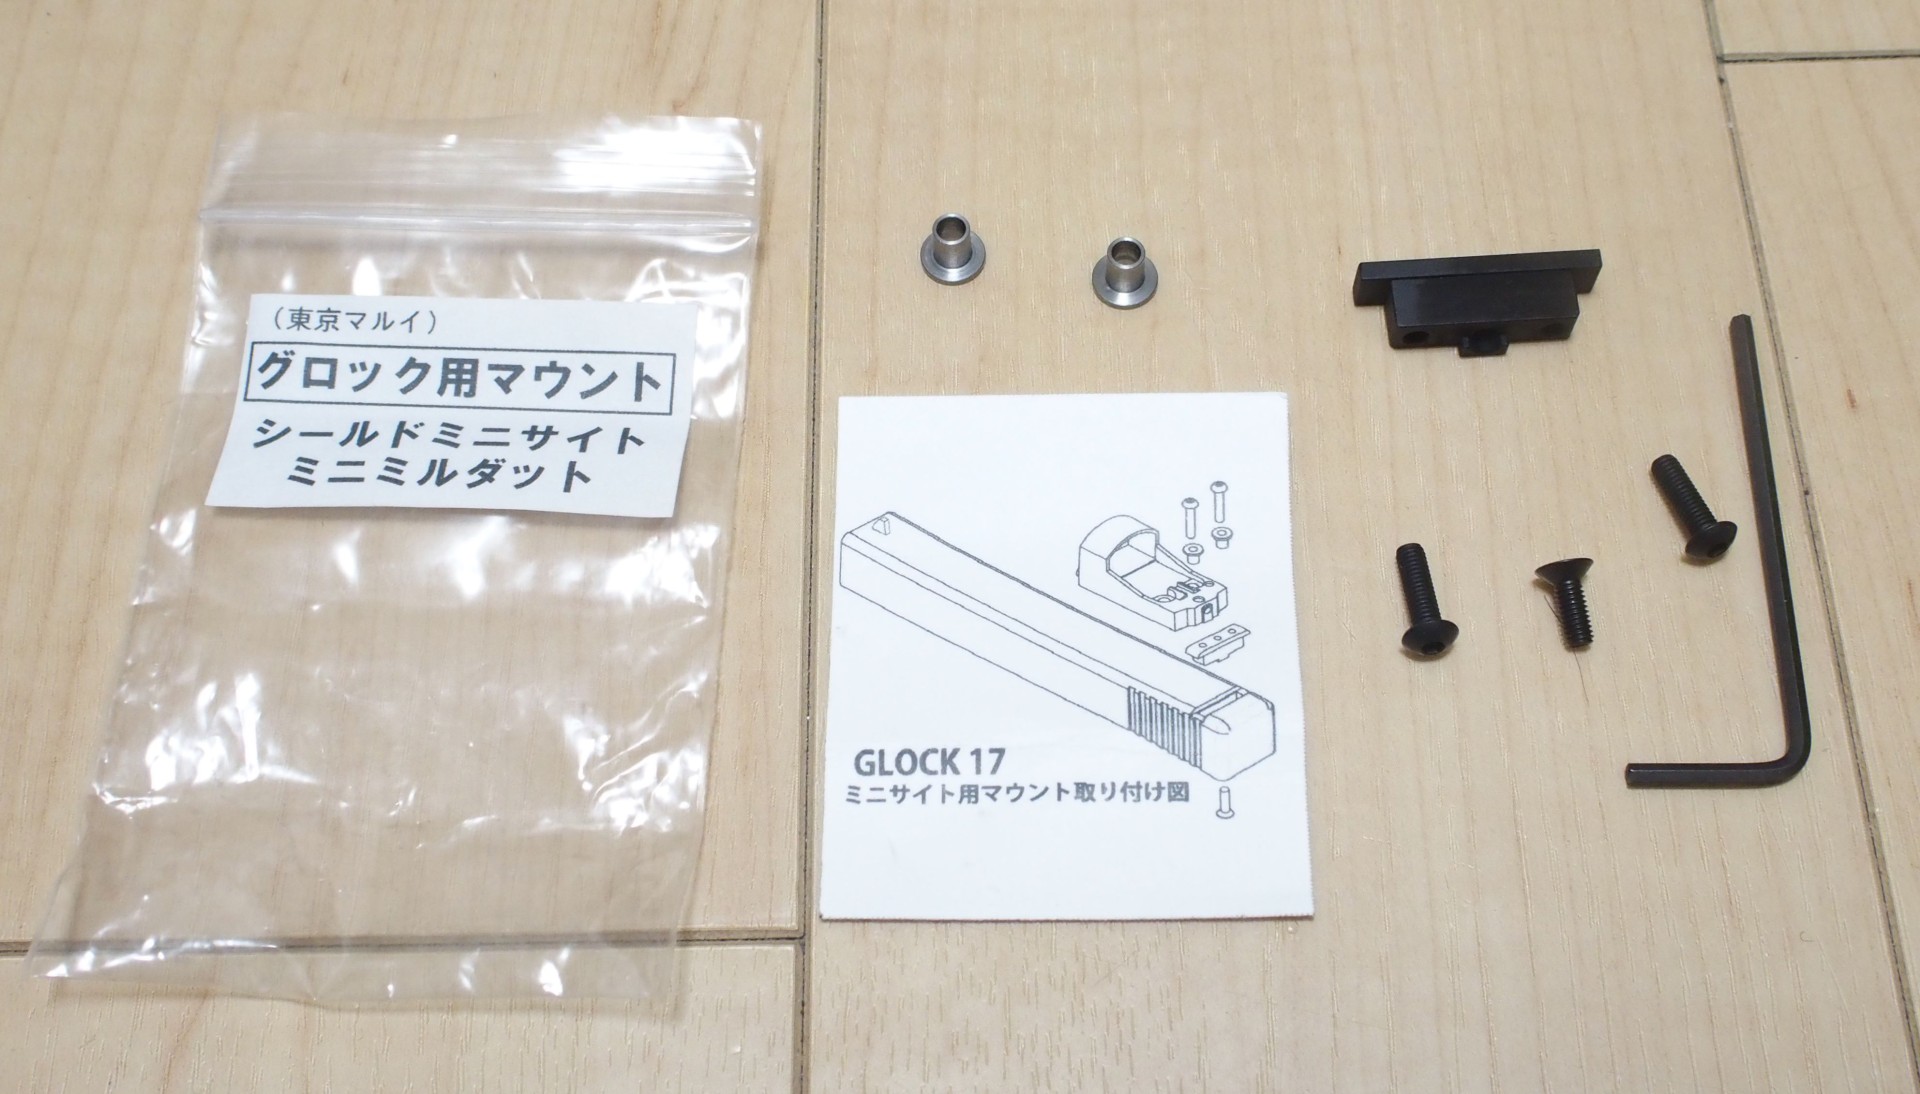 東京マルイ系glock用 ミニドットサイトマウントを購入しました エボログ